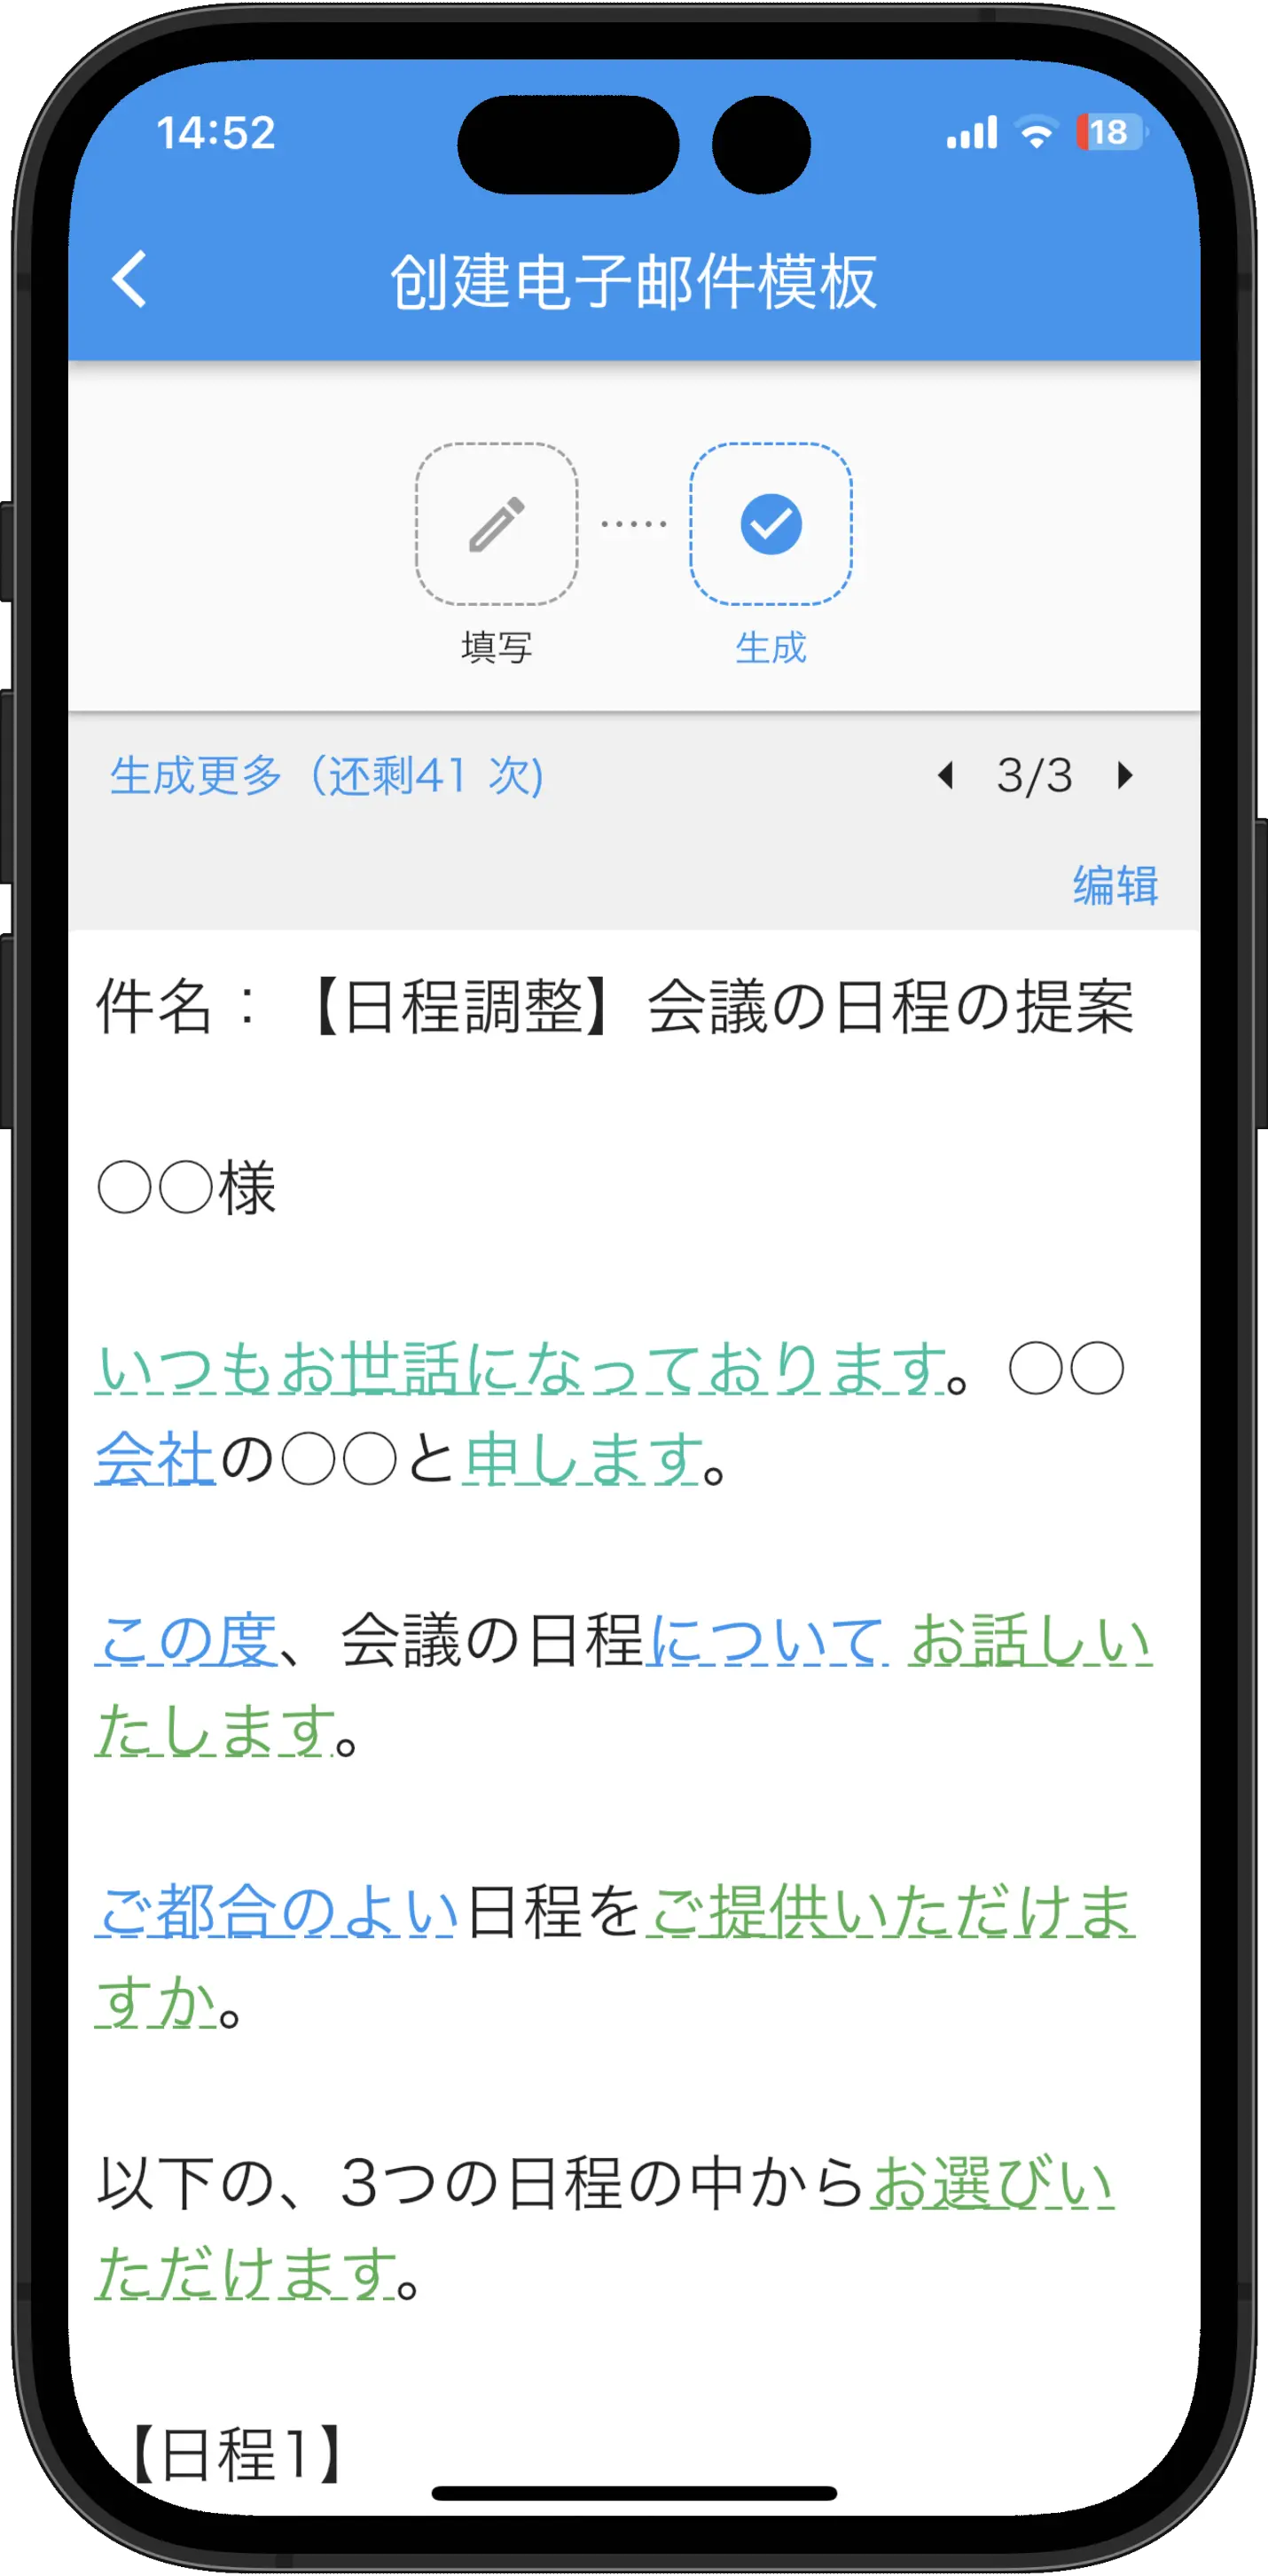 正在由日语敬语转换App应用程序生成的句子